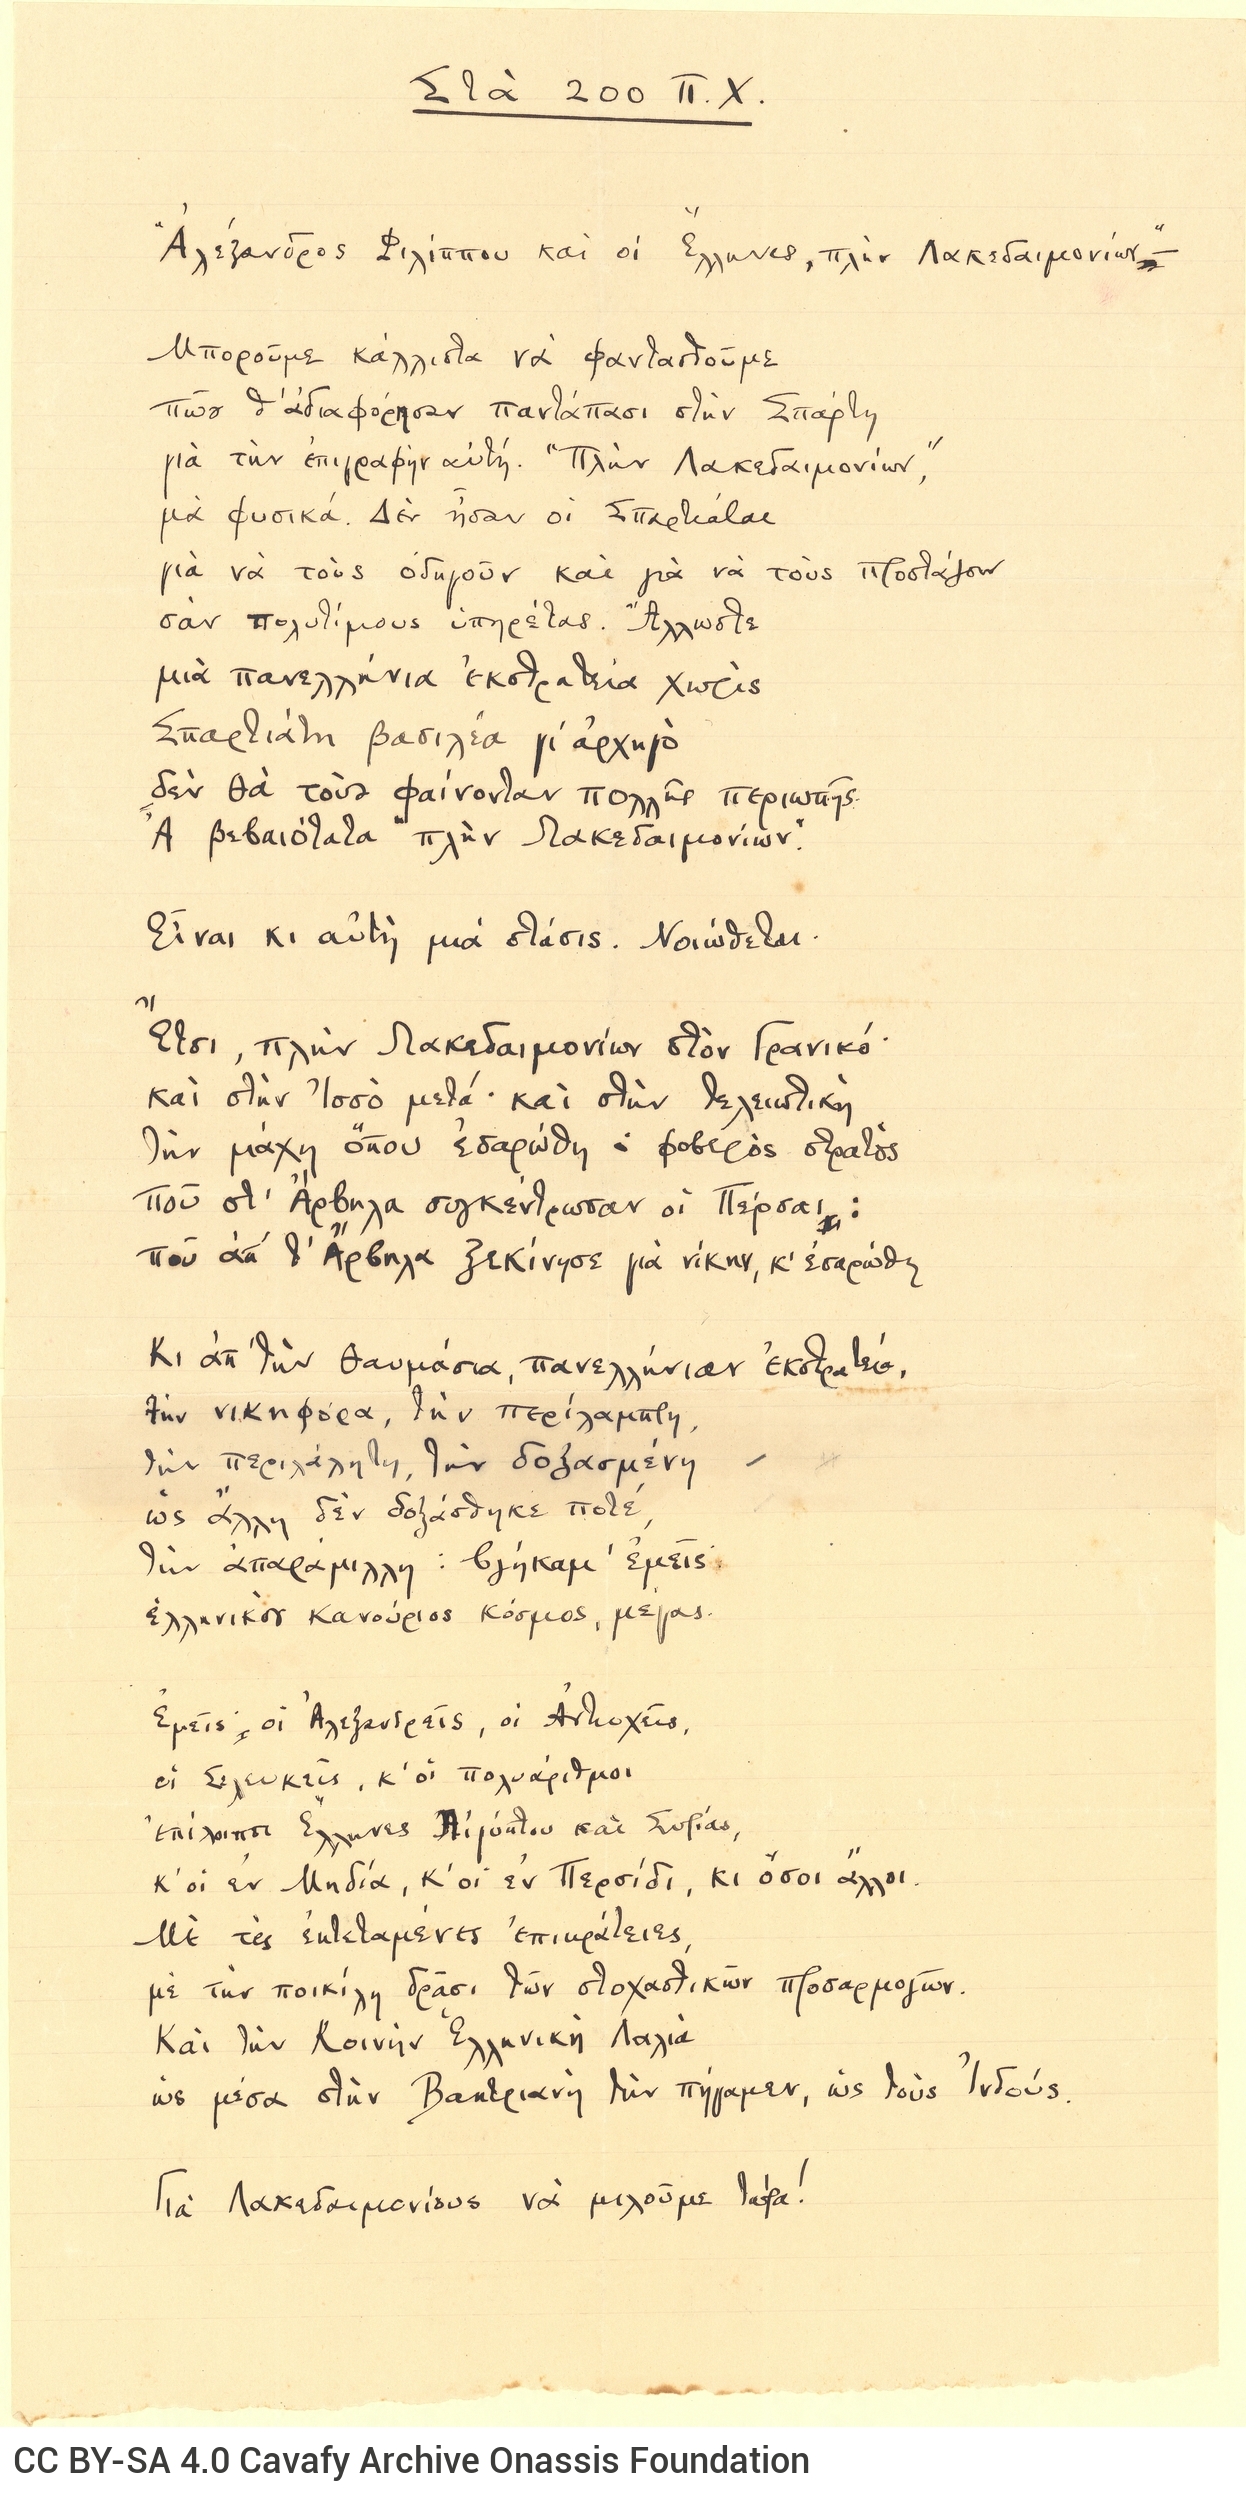 Manuscript of the poem "In 200 B.C.".